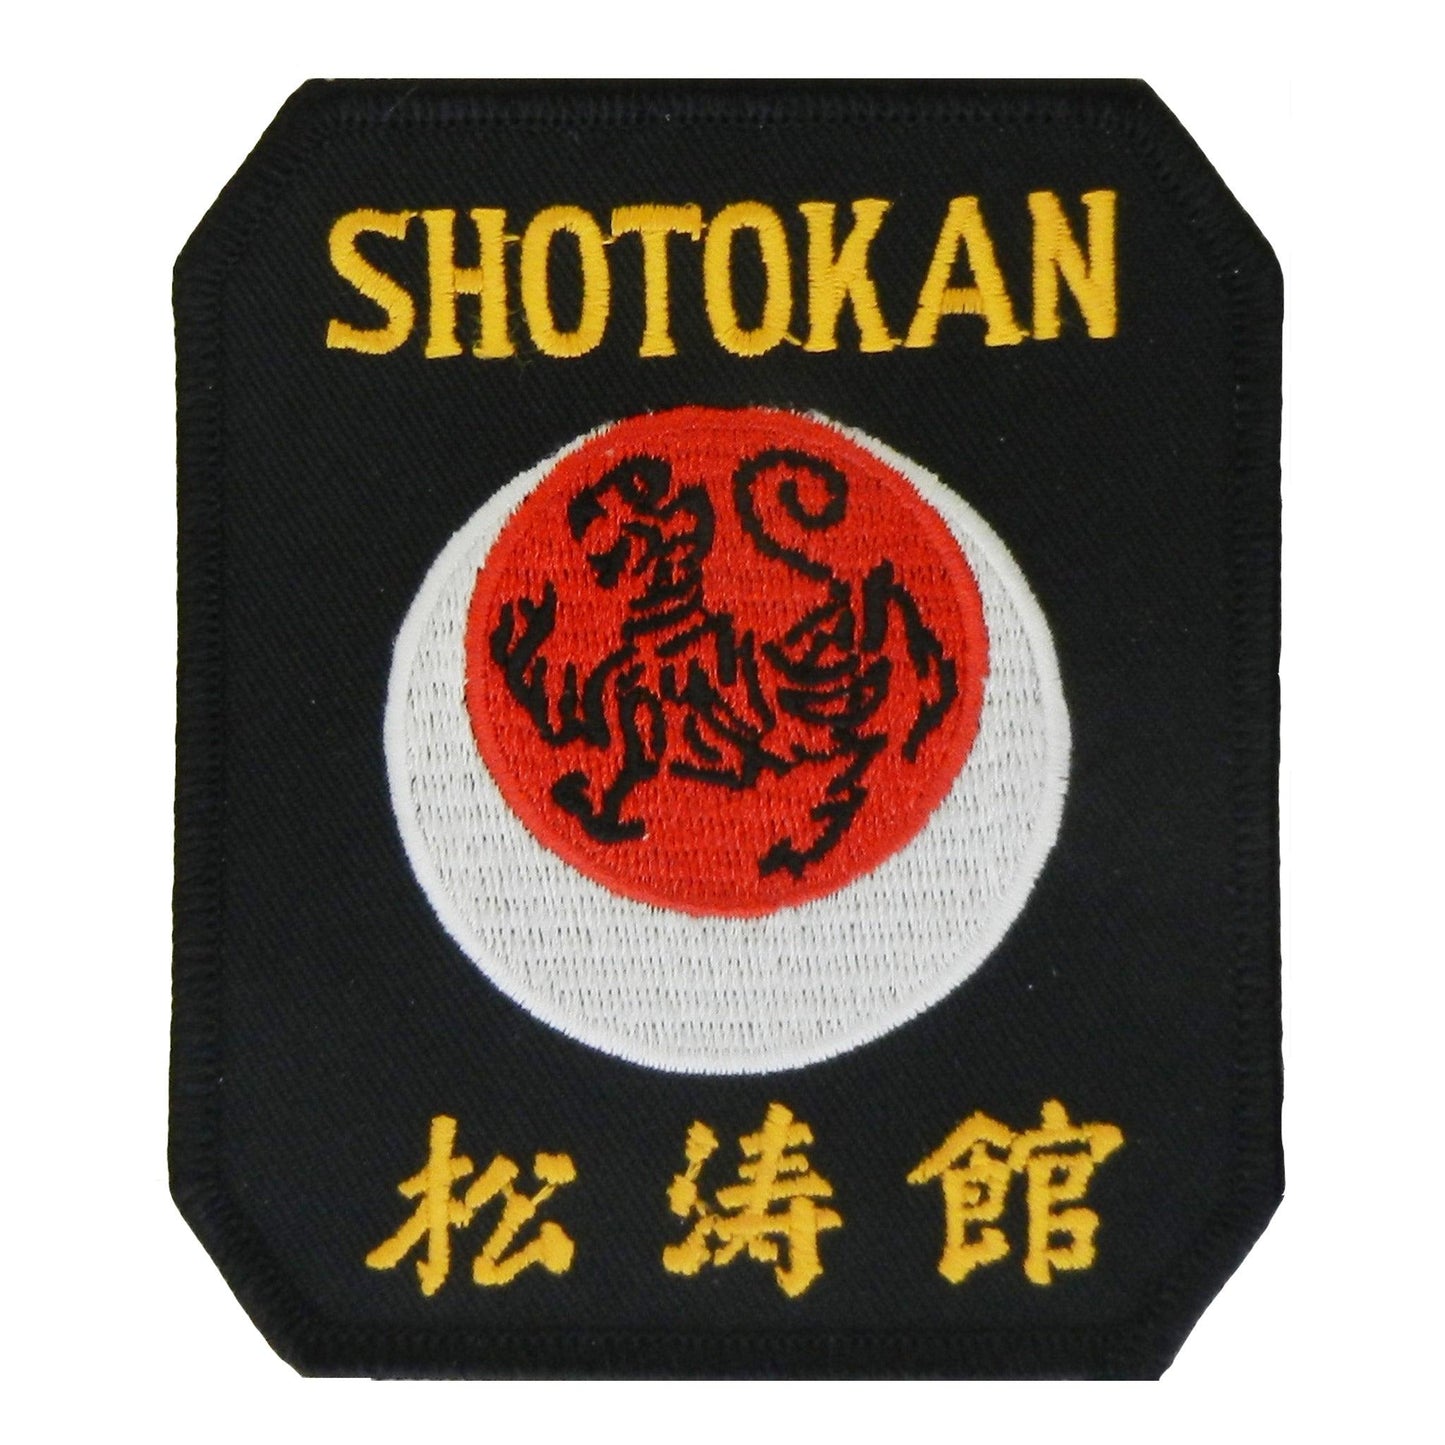 Shotokan Tiger/Moon Patch - Violent Art Shop